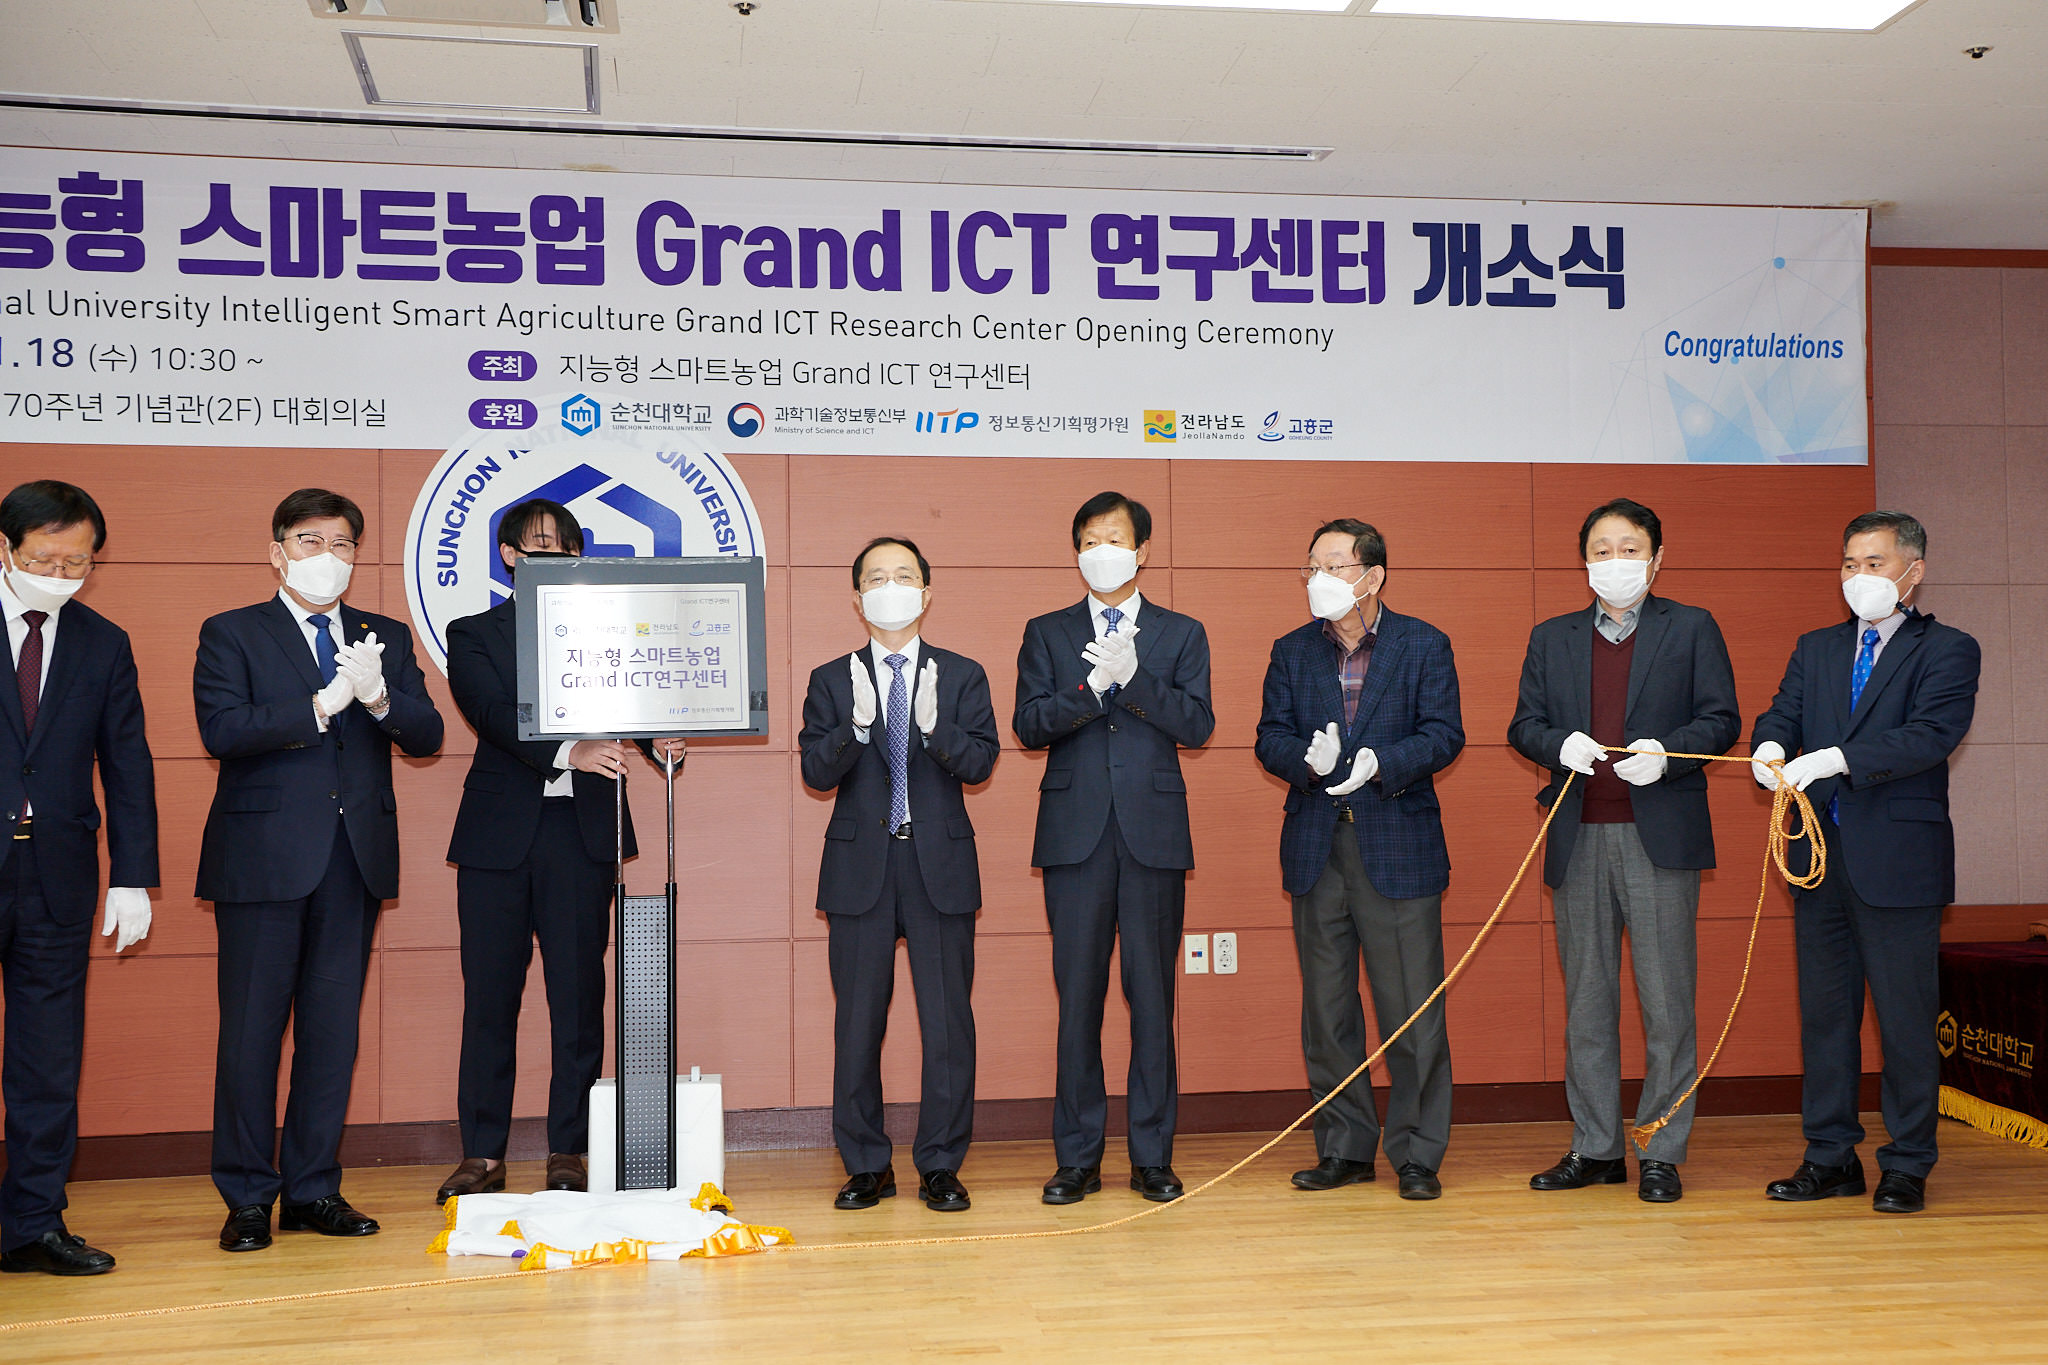 Grand ICT 연구 센터 개소식(수정 중)